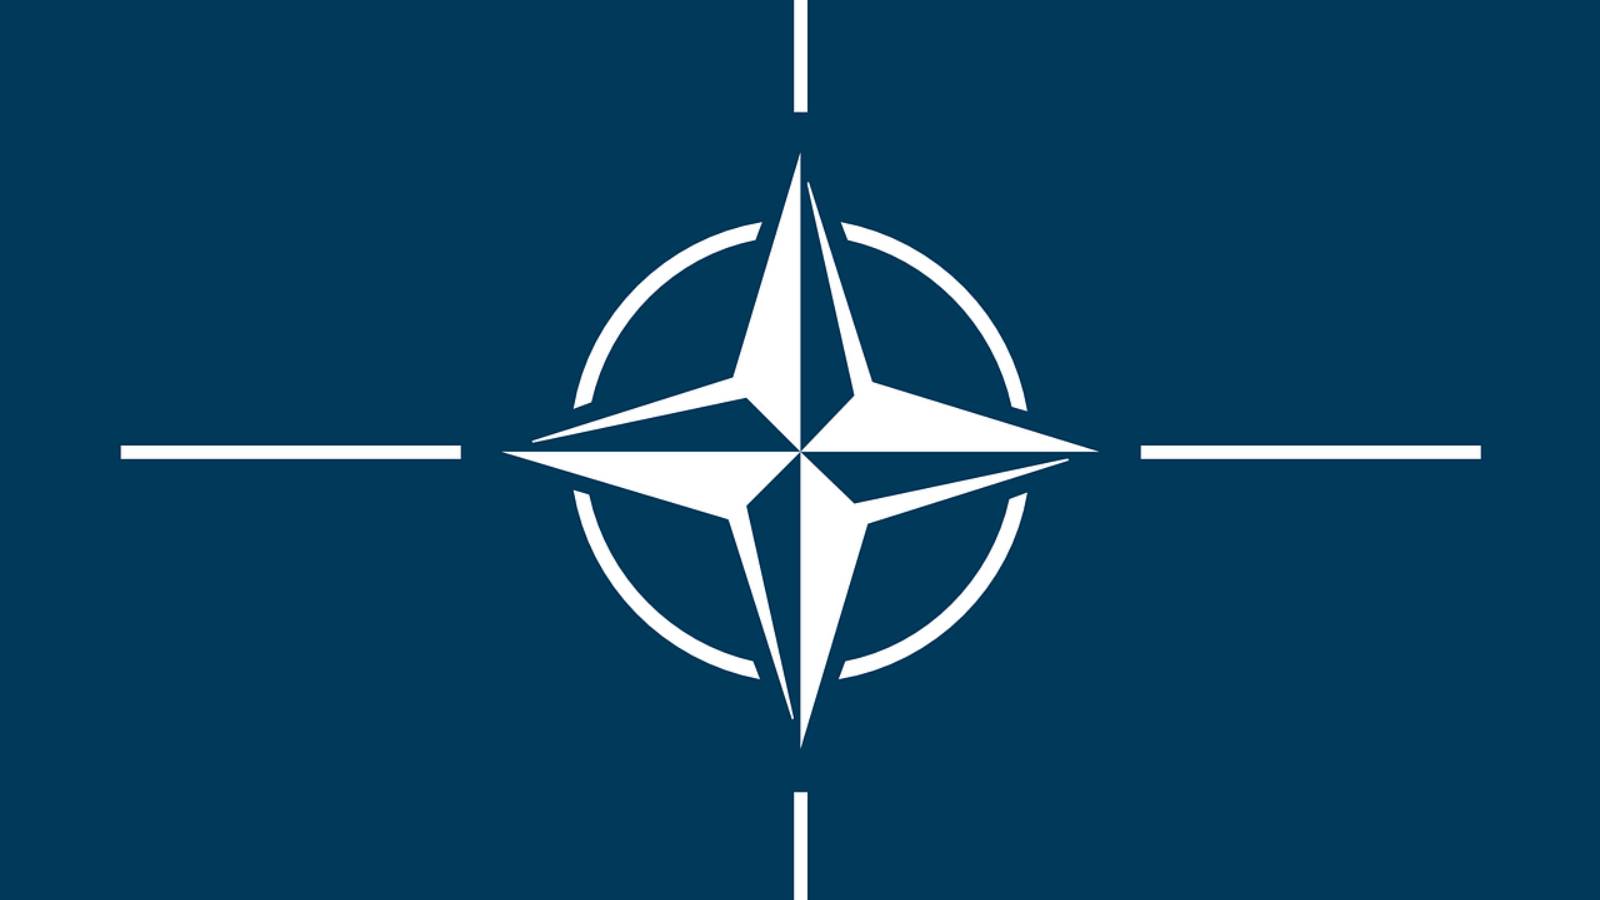 Decizia Importanta NATO Dezamagi Liderii Ucrainei